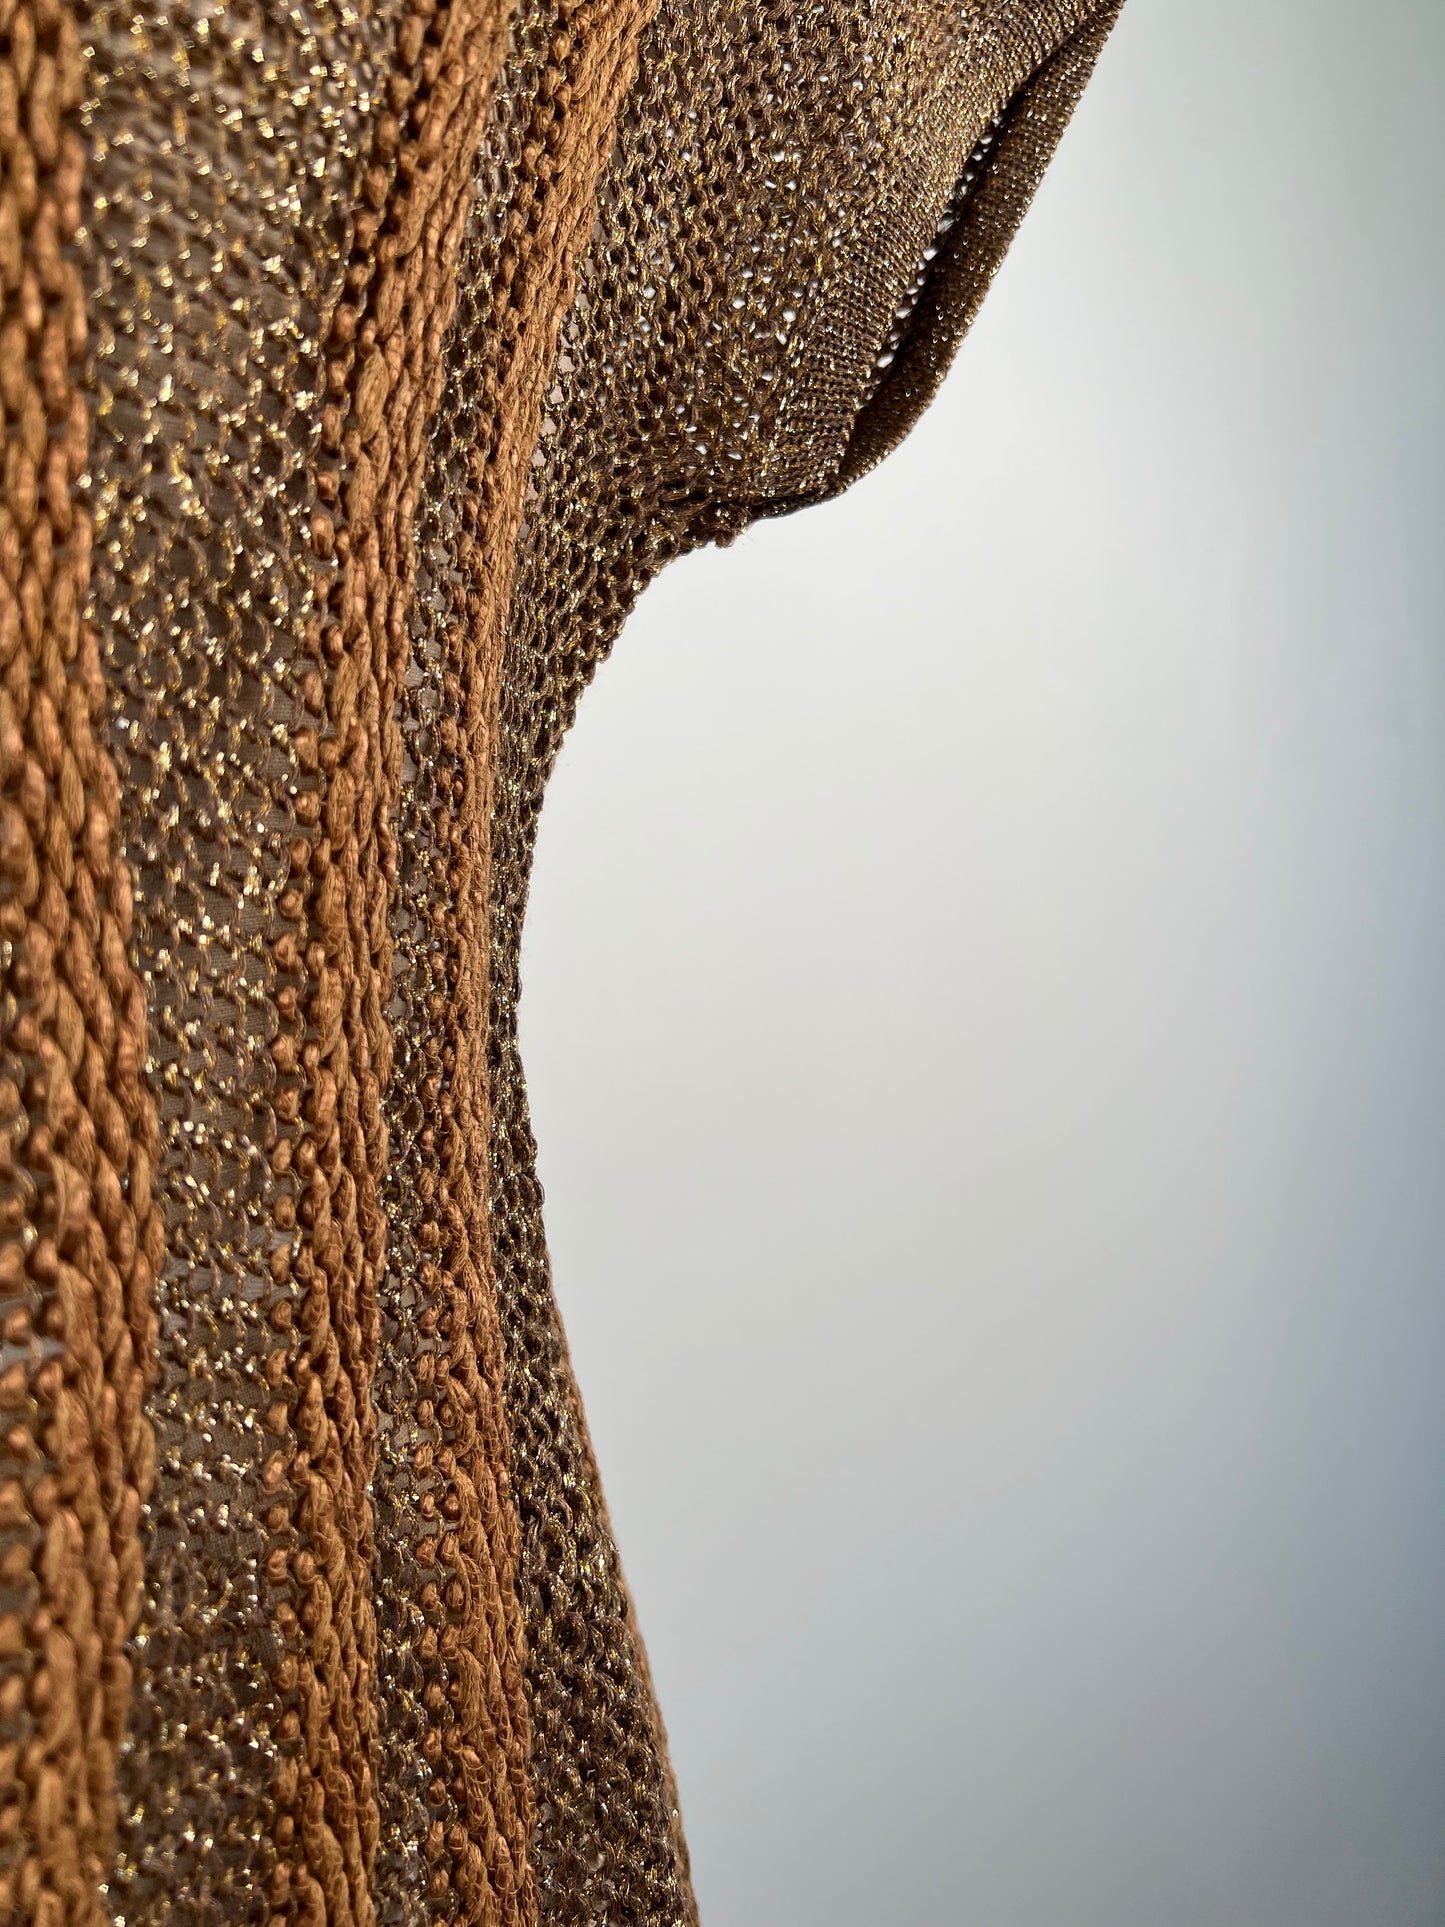 Débardeur en tricot ajouré muscade dorée à dos nu (S/M)